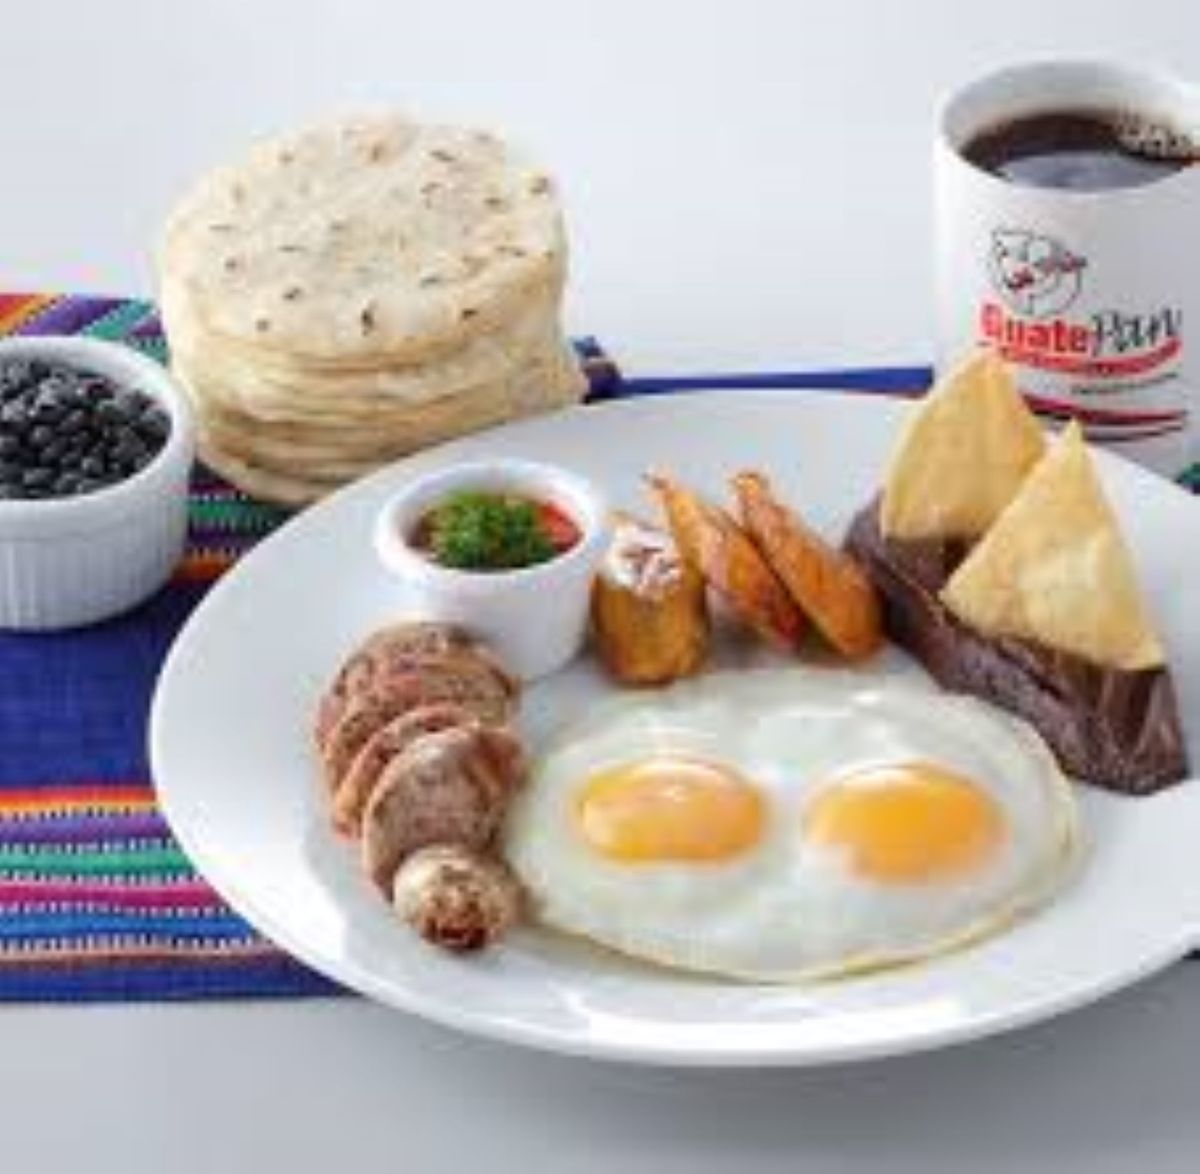 Guadalupano's Desayuno - Breakfast